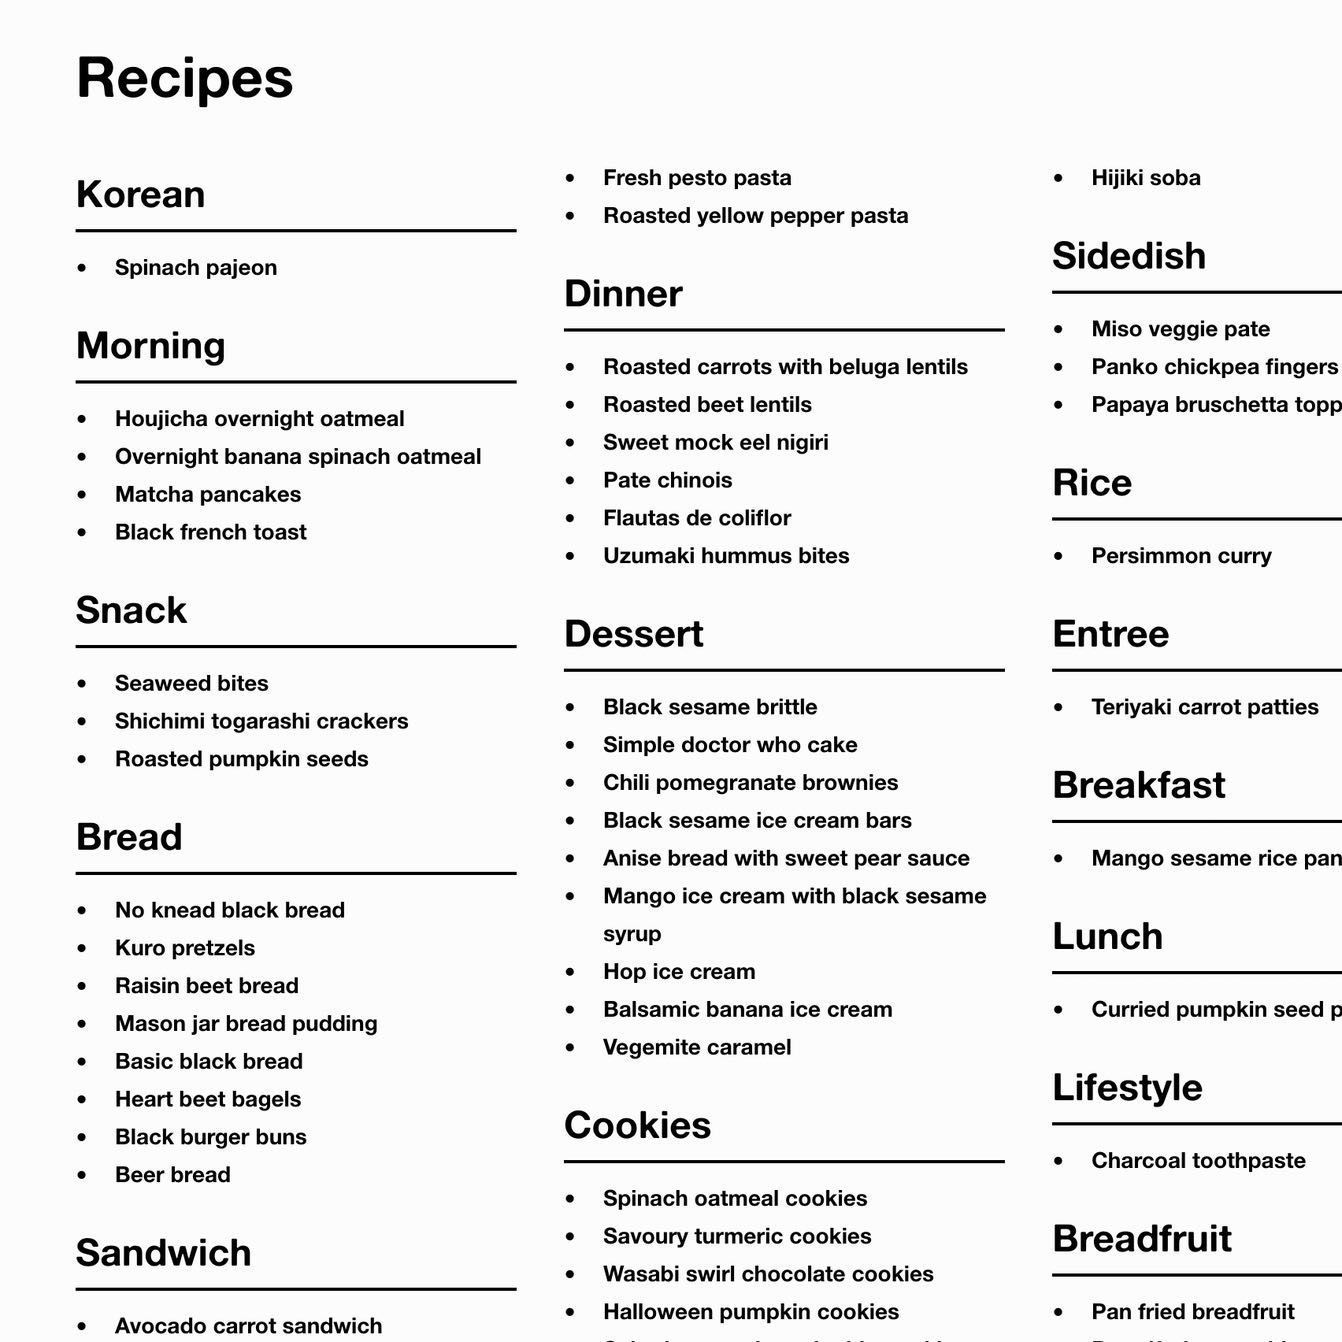 Recipes Listing